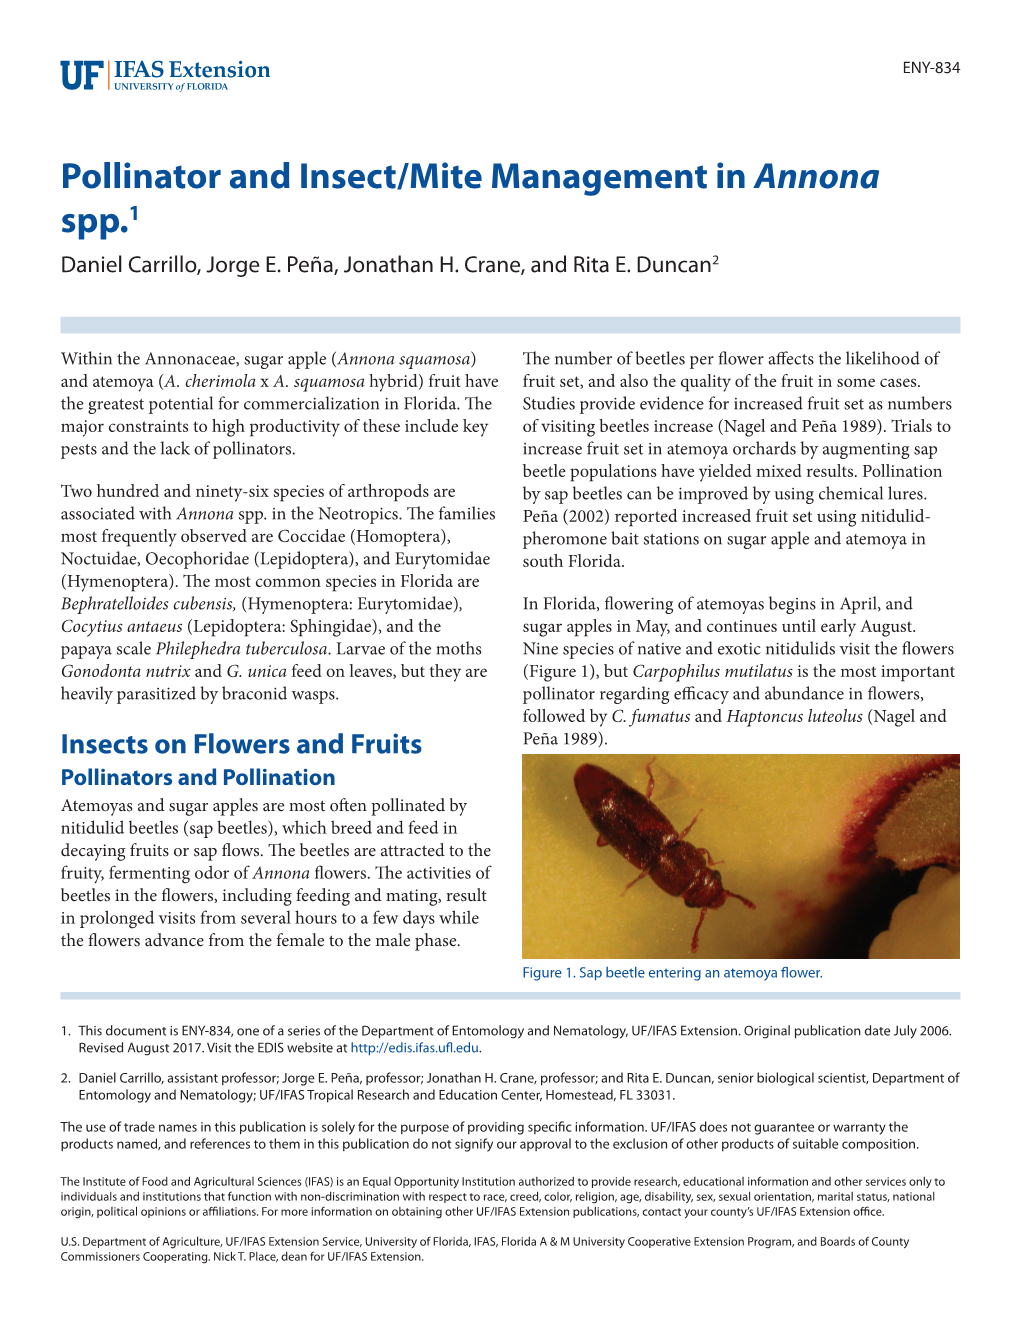 Pollinator and Insect/Mite Management in Annona Spp.1 Daniel Carrillo, Jorge E